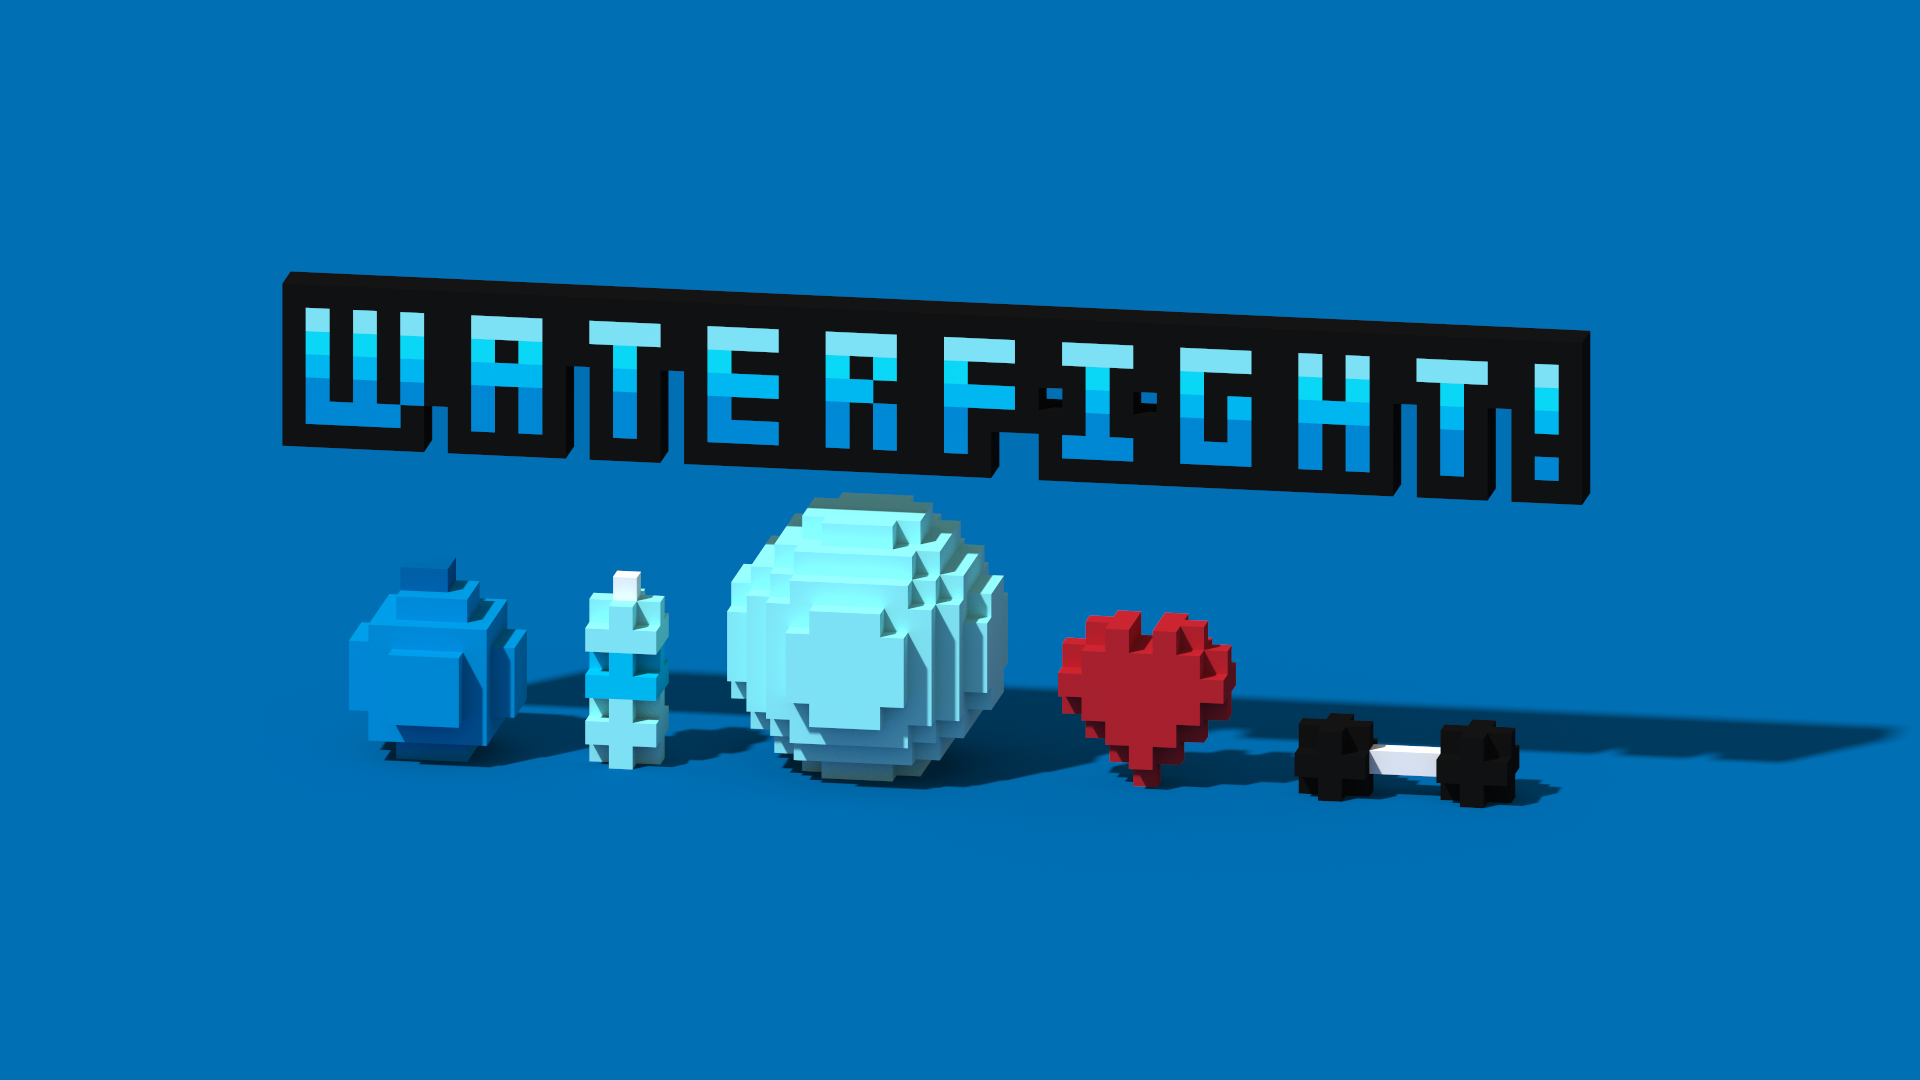 WaterFight!